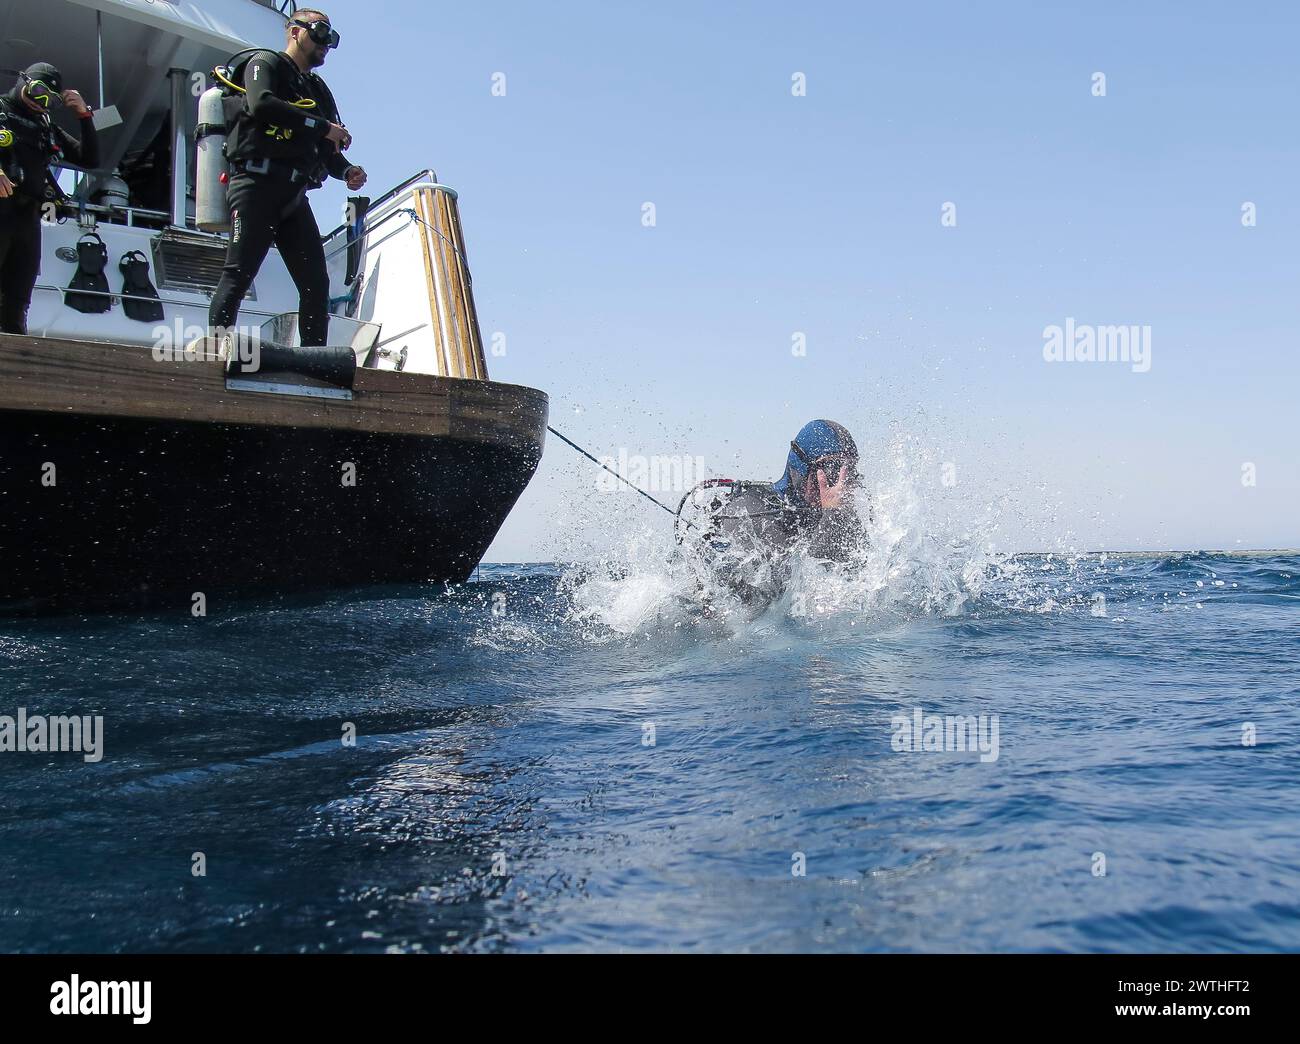 Taucher springt vom Tauchschiff ins Wasser, Rotes Meer, Ägypten Banque D'Images